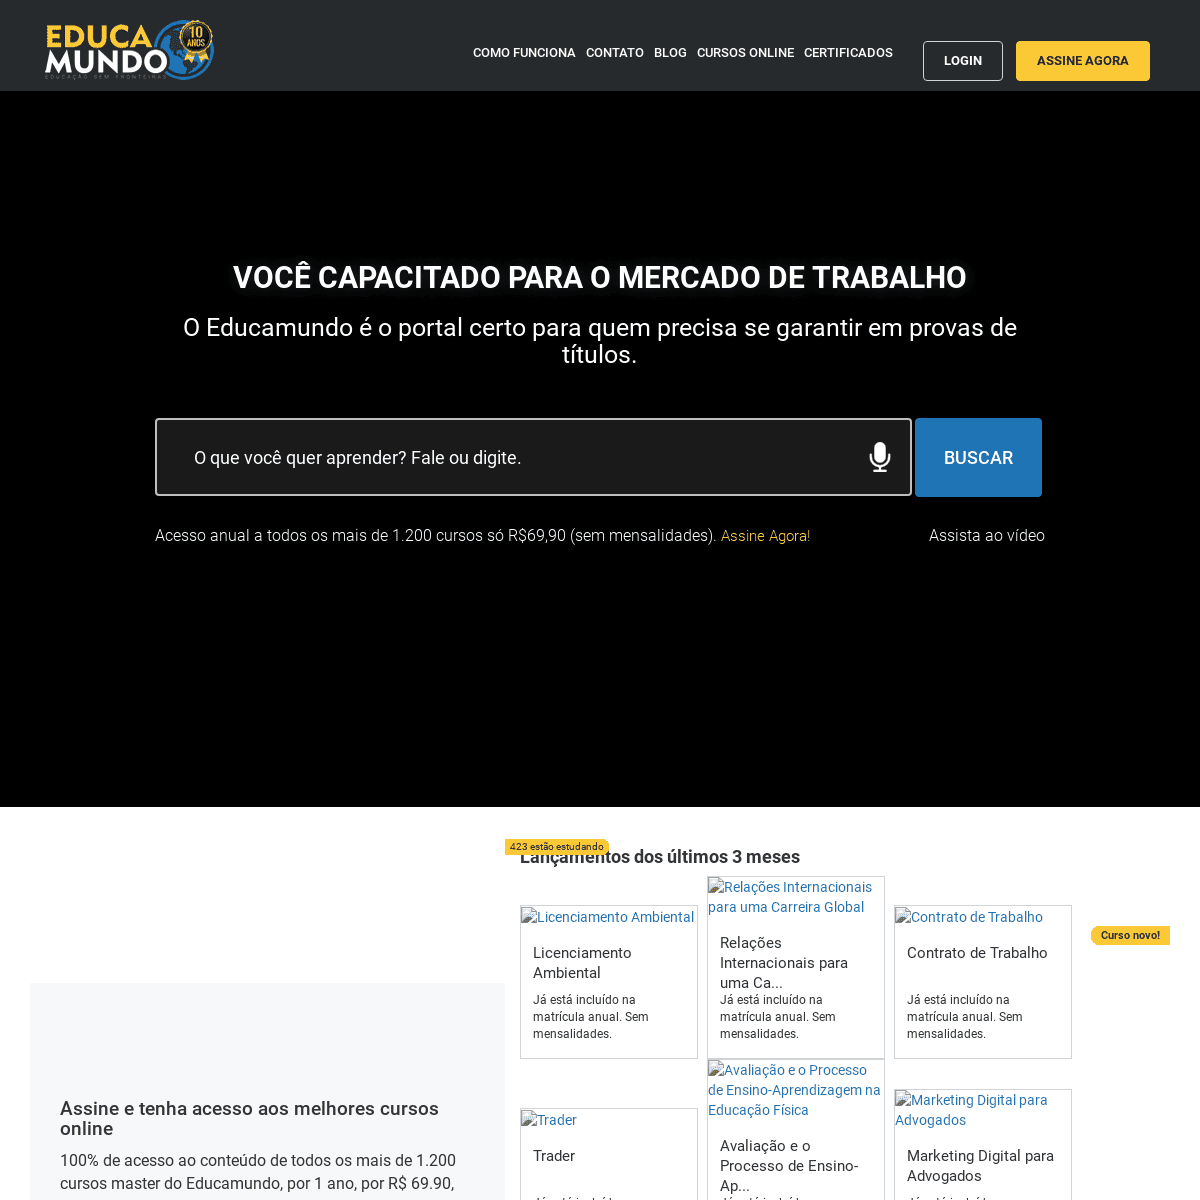 A complete backup of educamundo.com.br